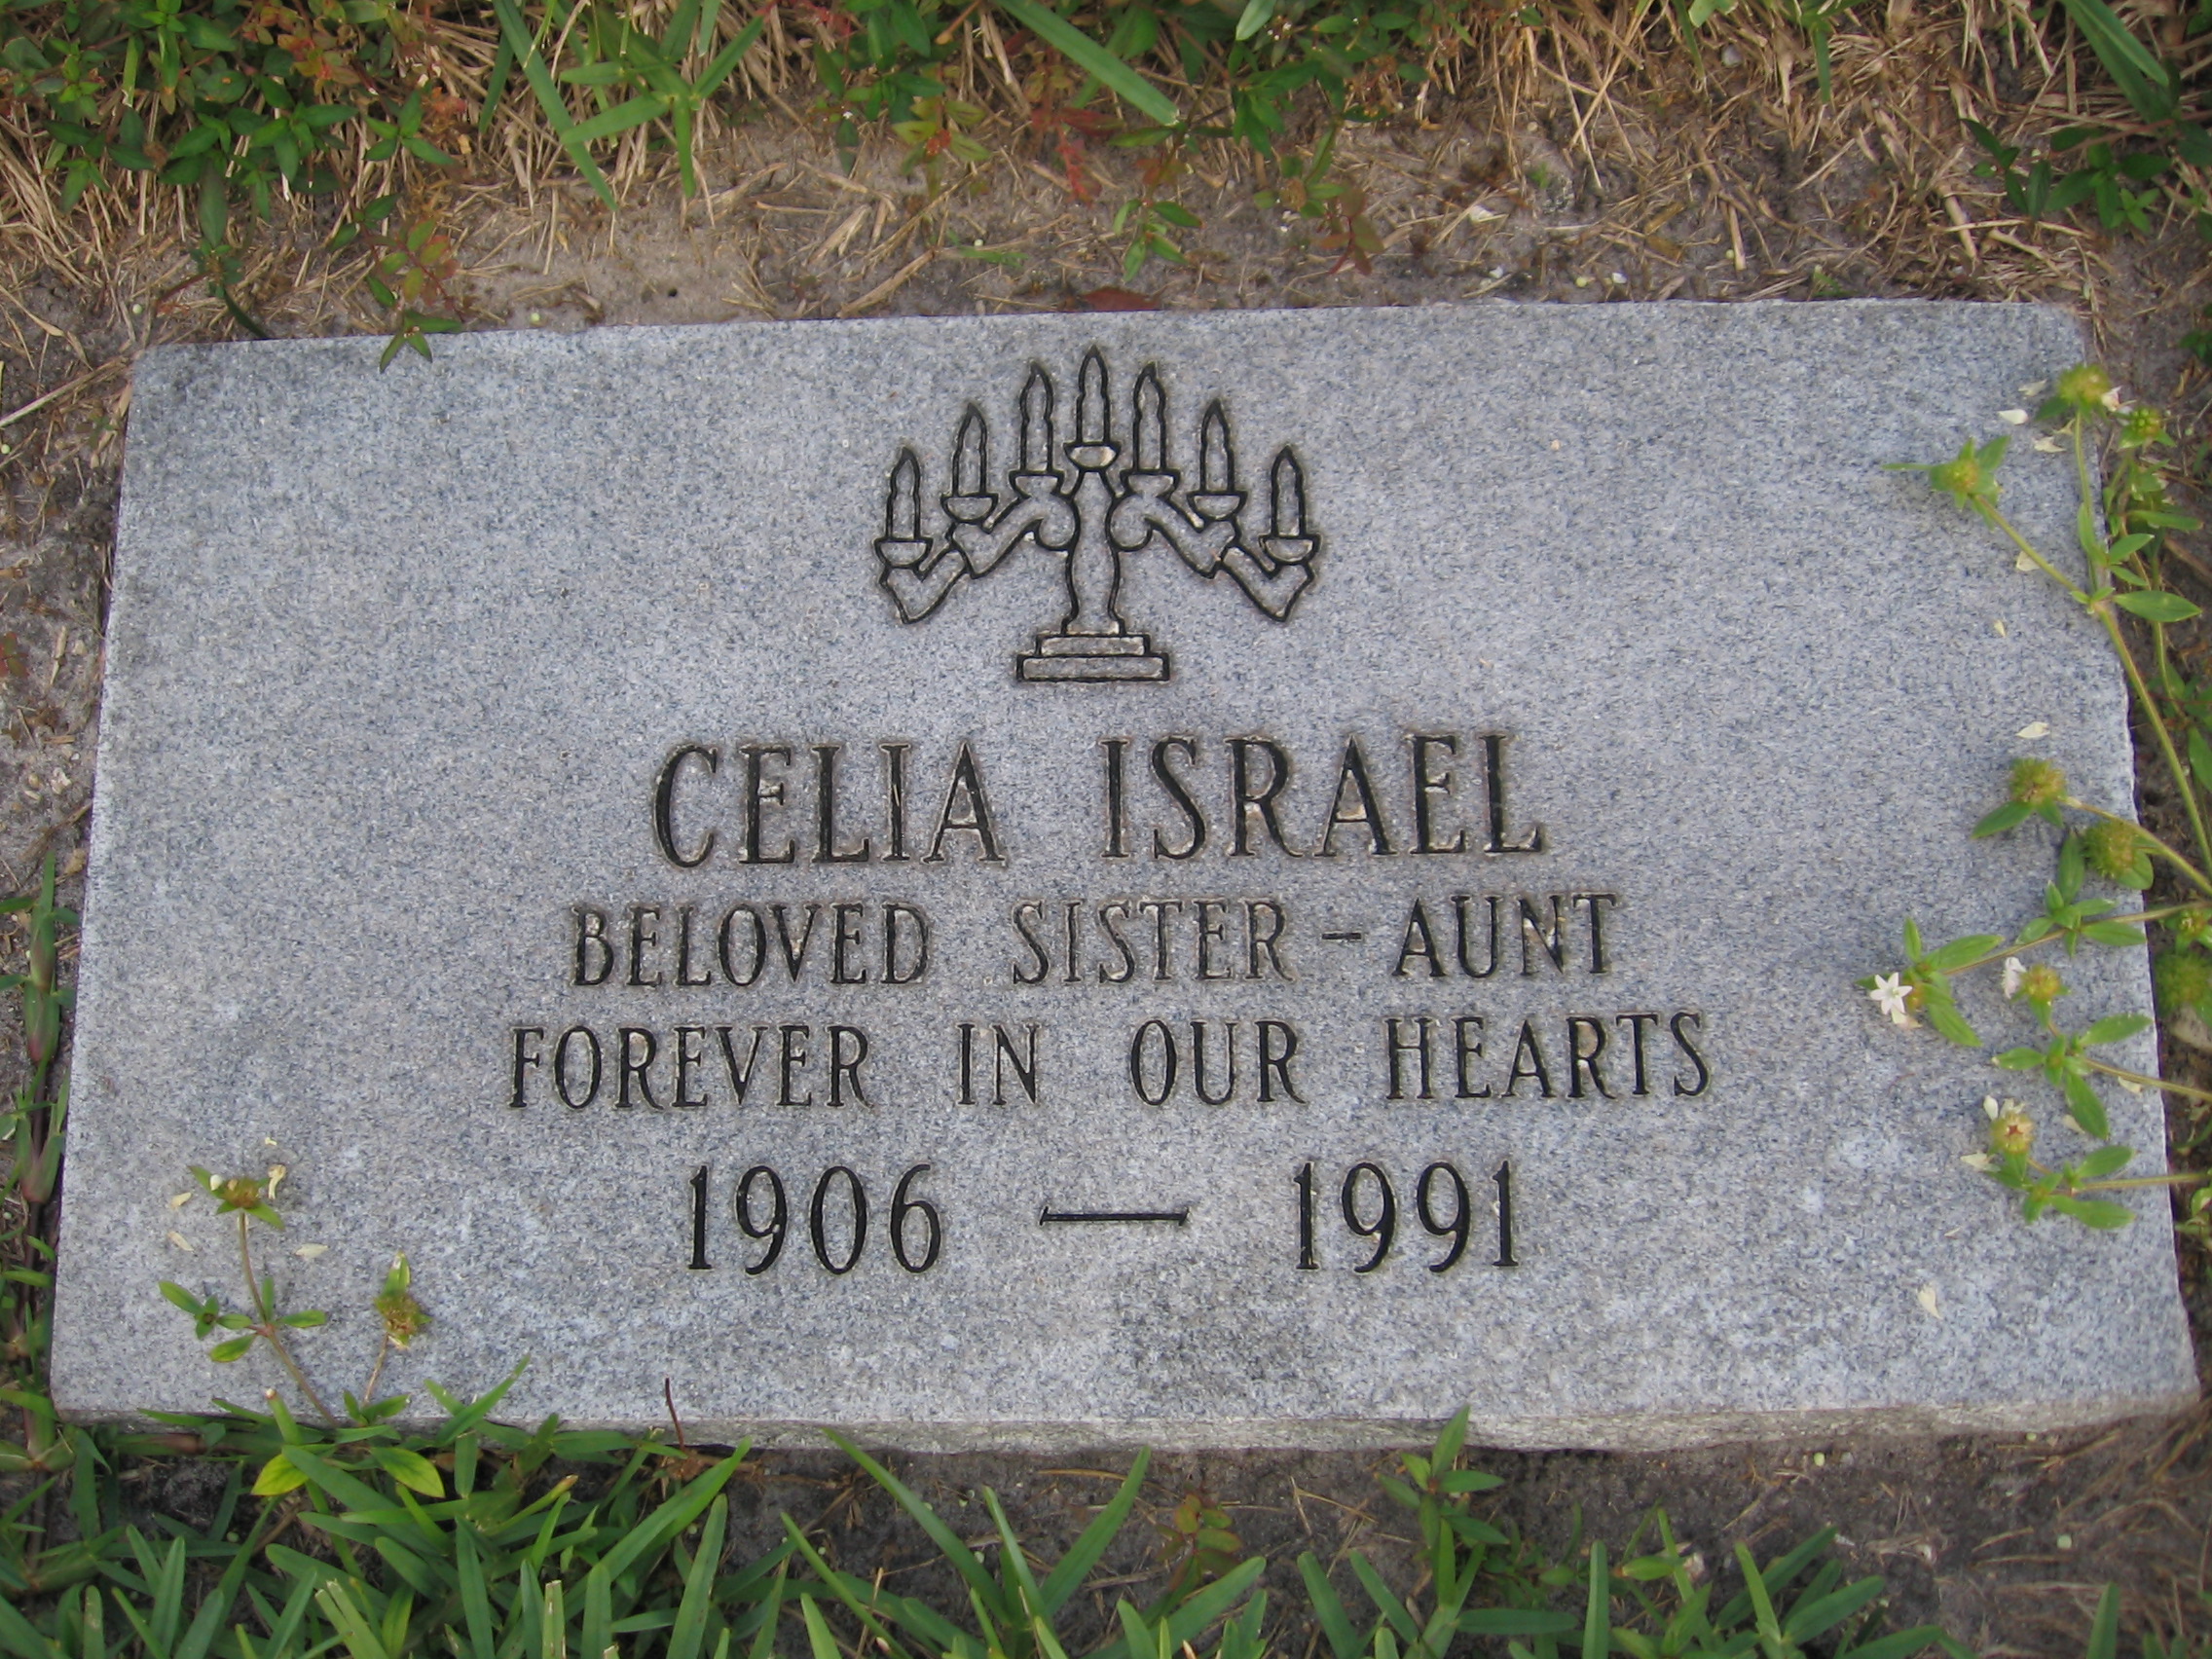 Celia Israel